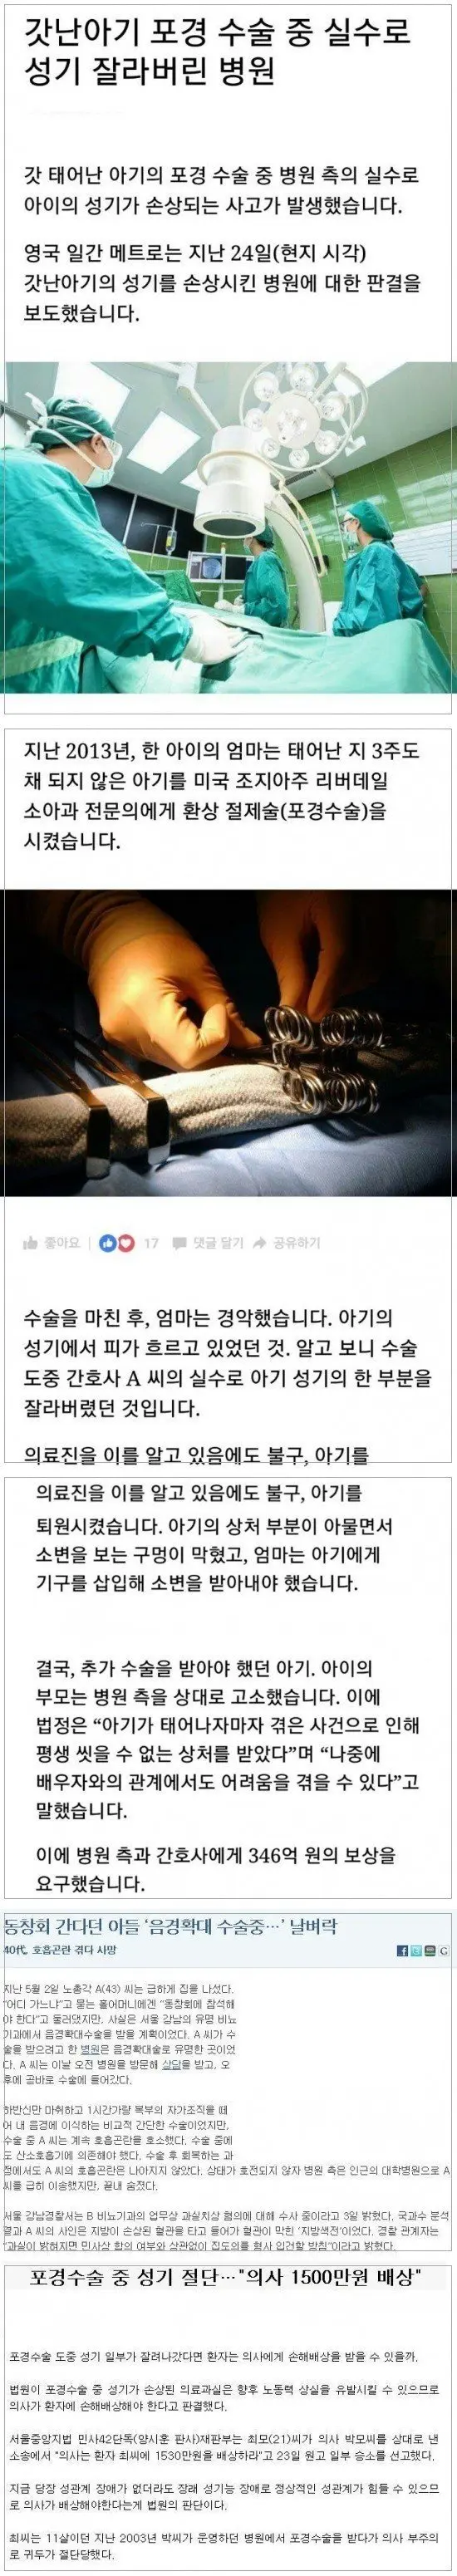 실수로 성기를 잘라버린 병원.jpg | mbong.kr 엠봉